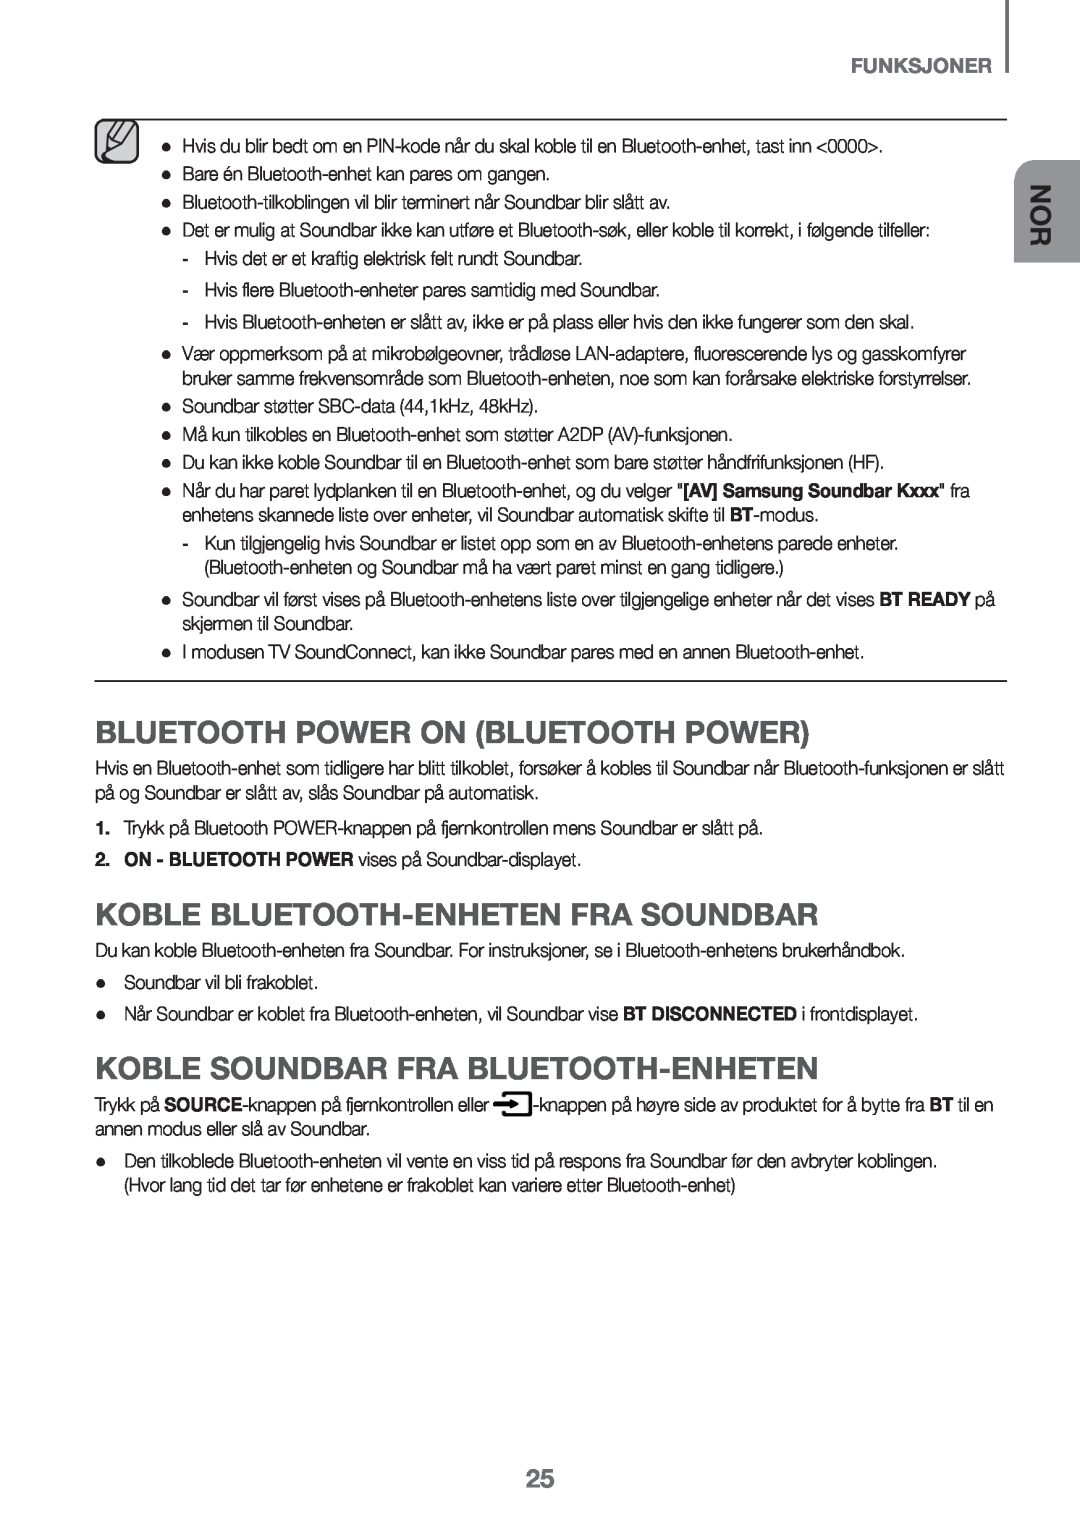 Samsung HW-K651/ZF, HW-K651/EN manual Koble Bluetooth-enheten fra Soundbar, Koble Soundbar fra Bluetooth-enheten, funksjoner 